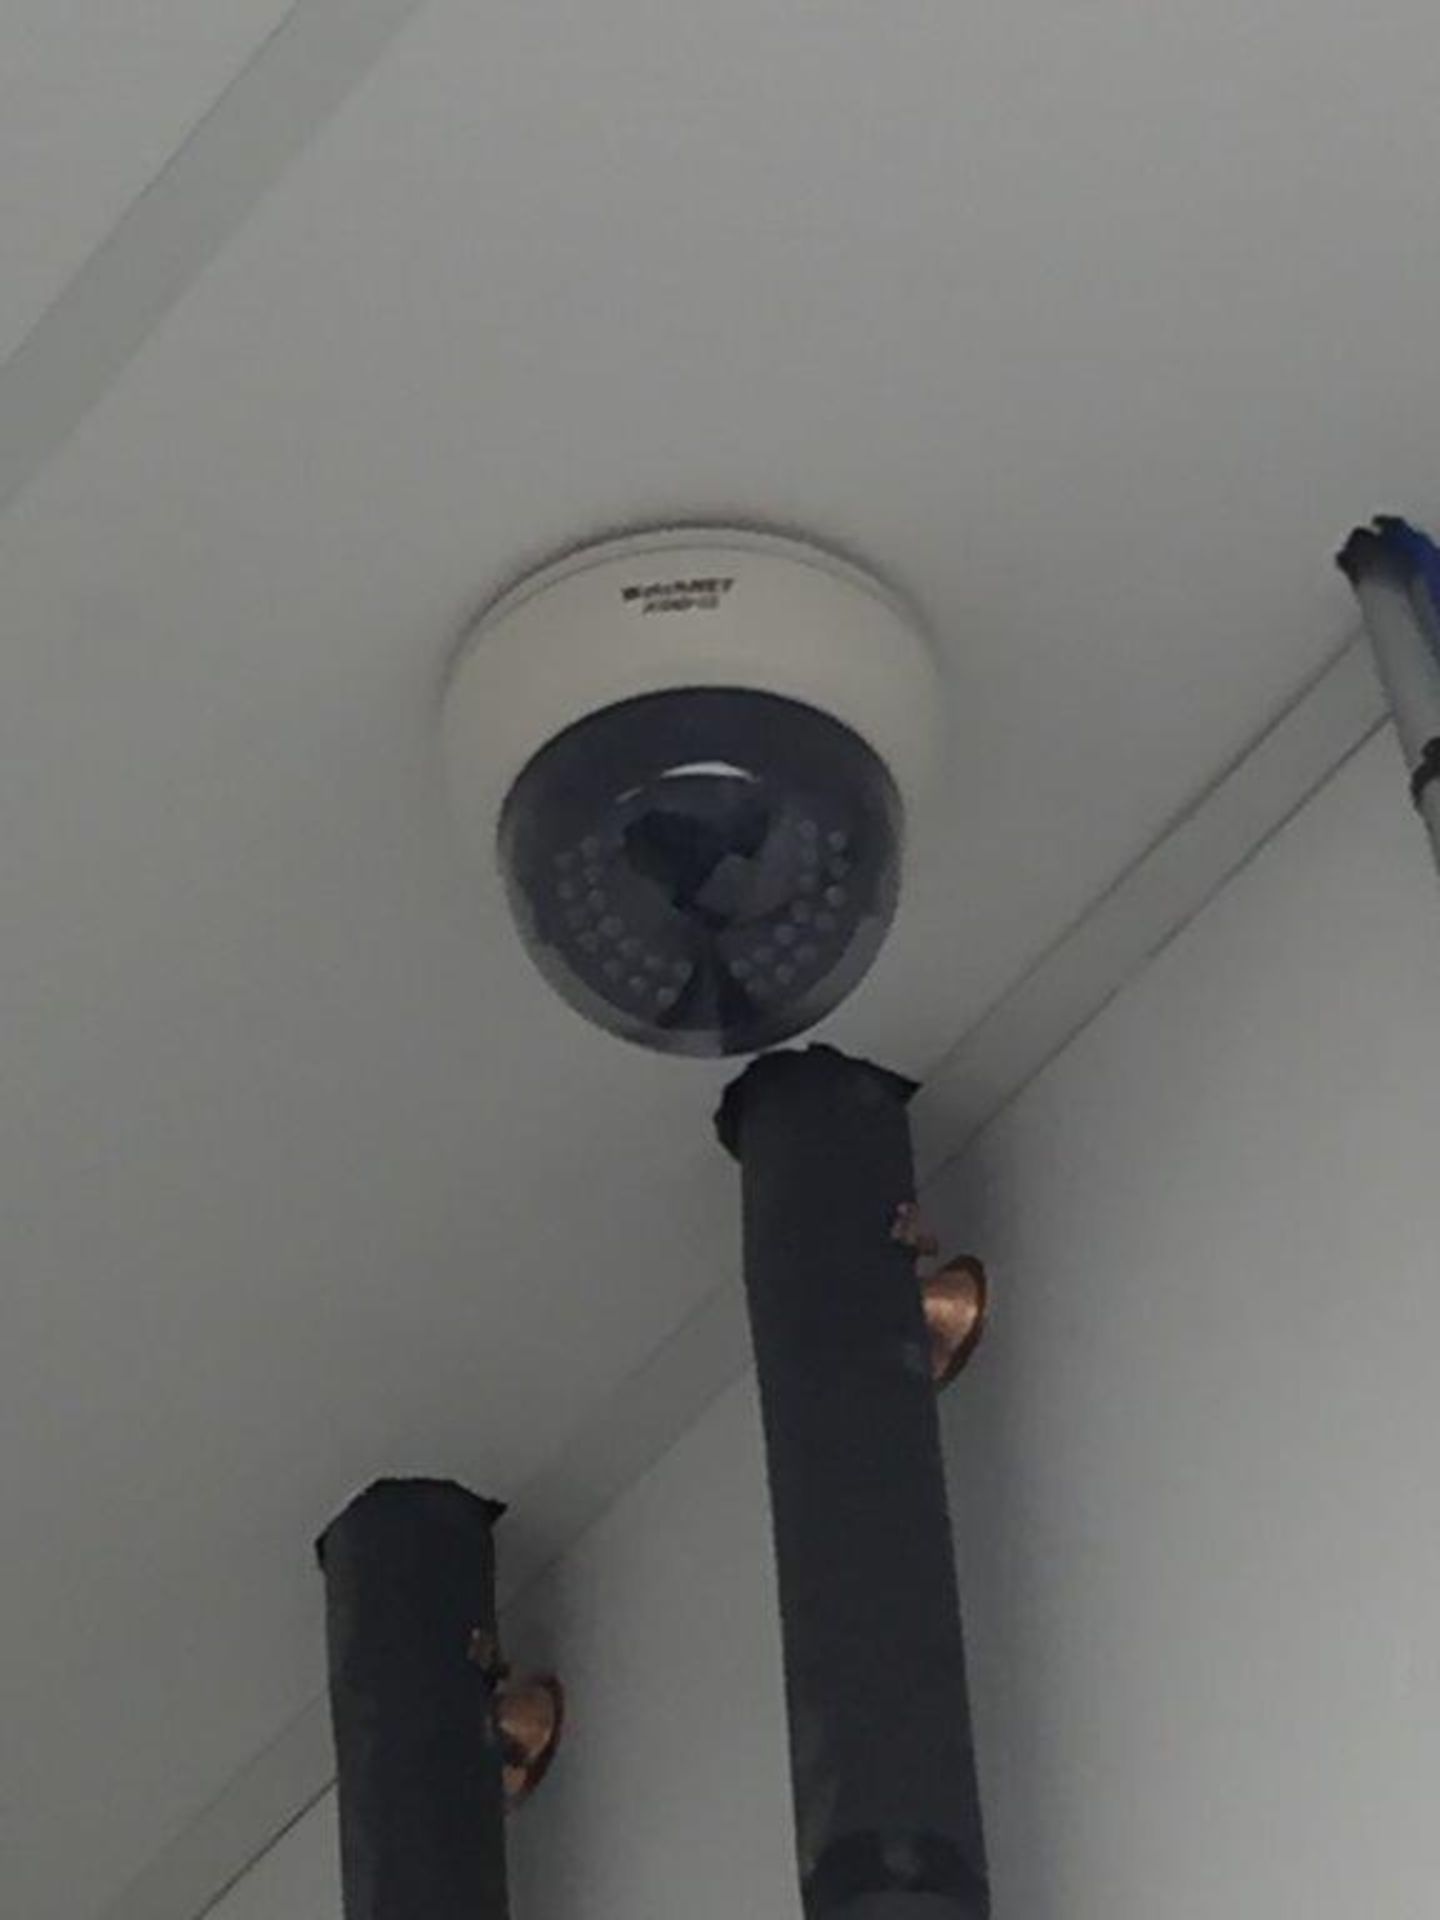 Système surveillance WATCHNET, (4) caméras & boite controle - Image 2 of 3